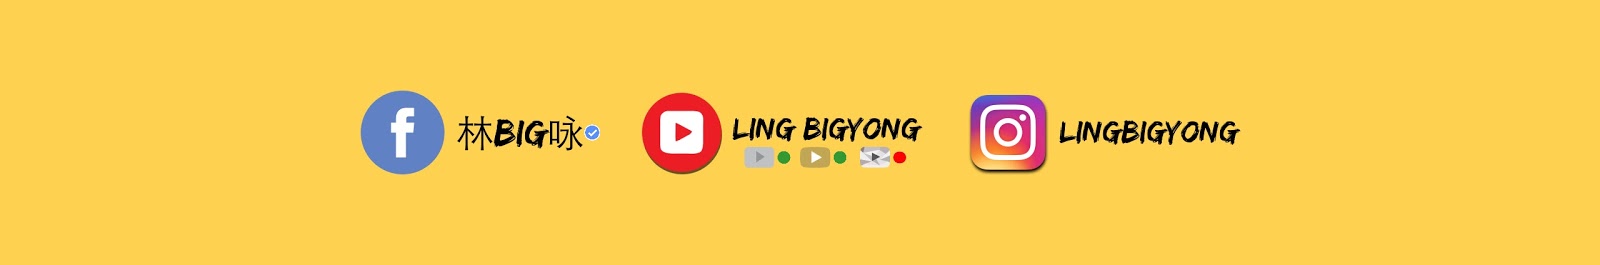 Ling BigYong